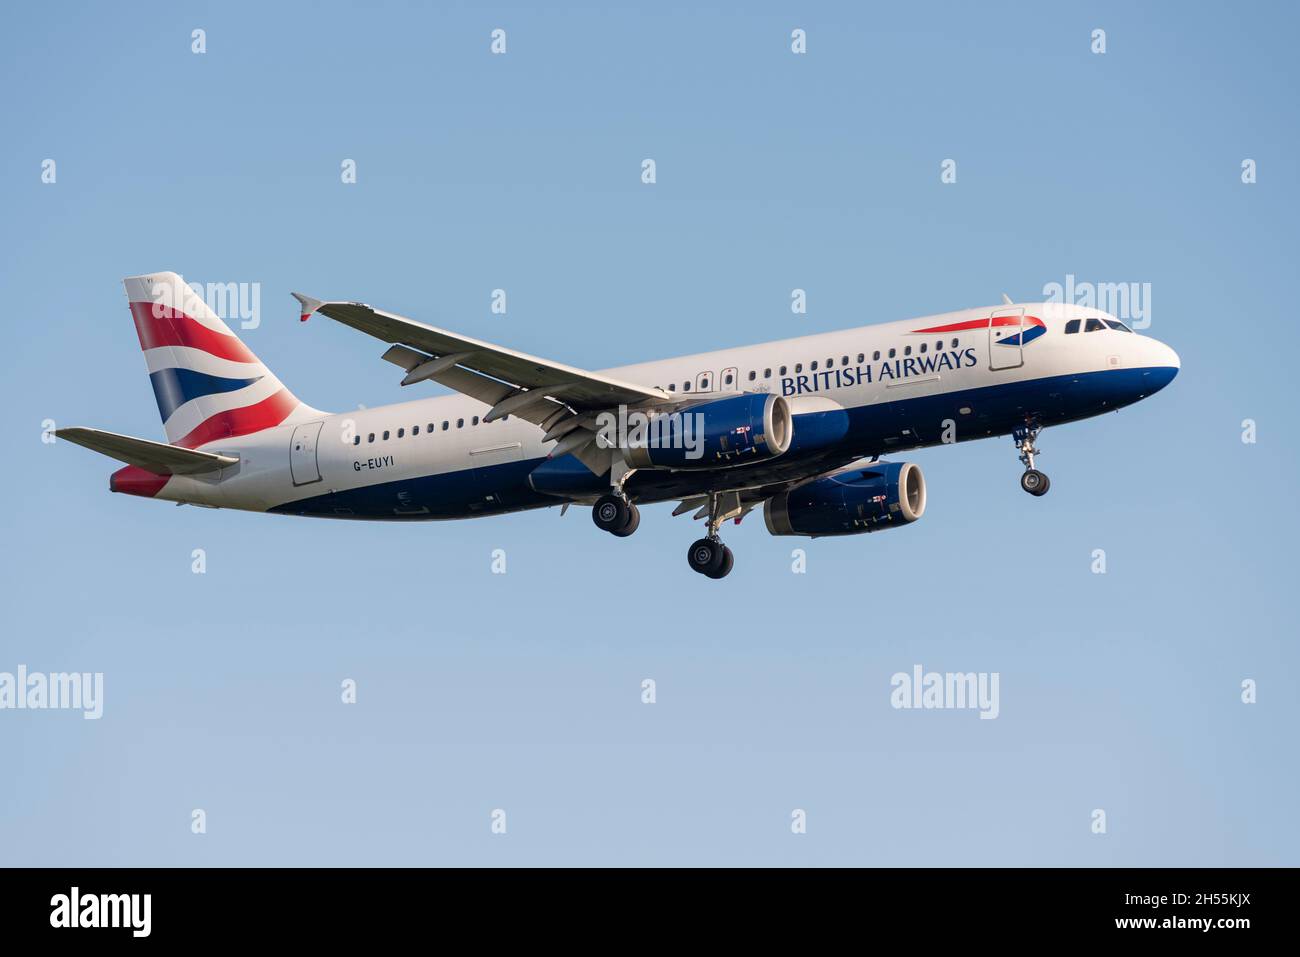 British Airways Airbus A320 200 Airliner-Düsenflugzeug G-EUYI auf dem Anflug auf den Flughafen London Heathrow, Großbritannien. Stockfoto